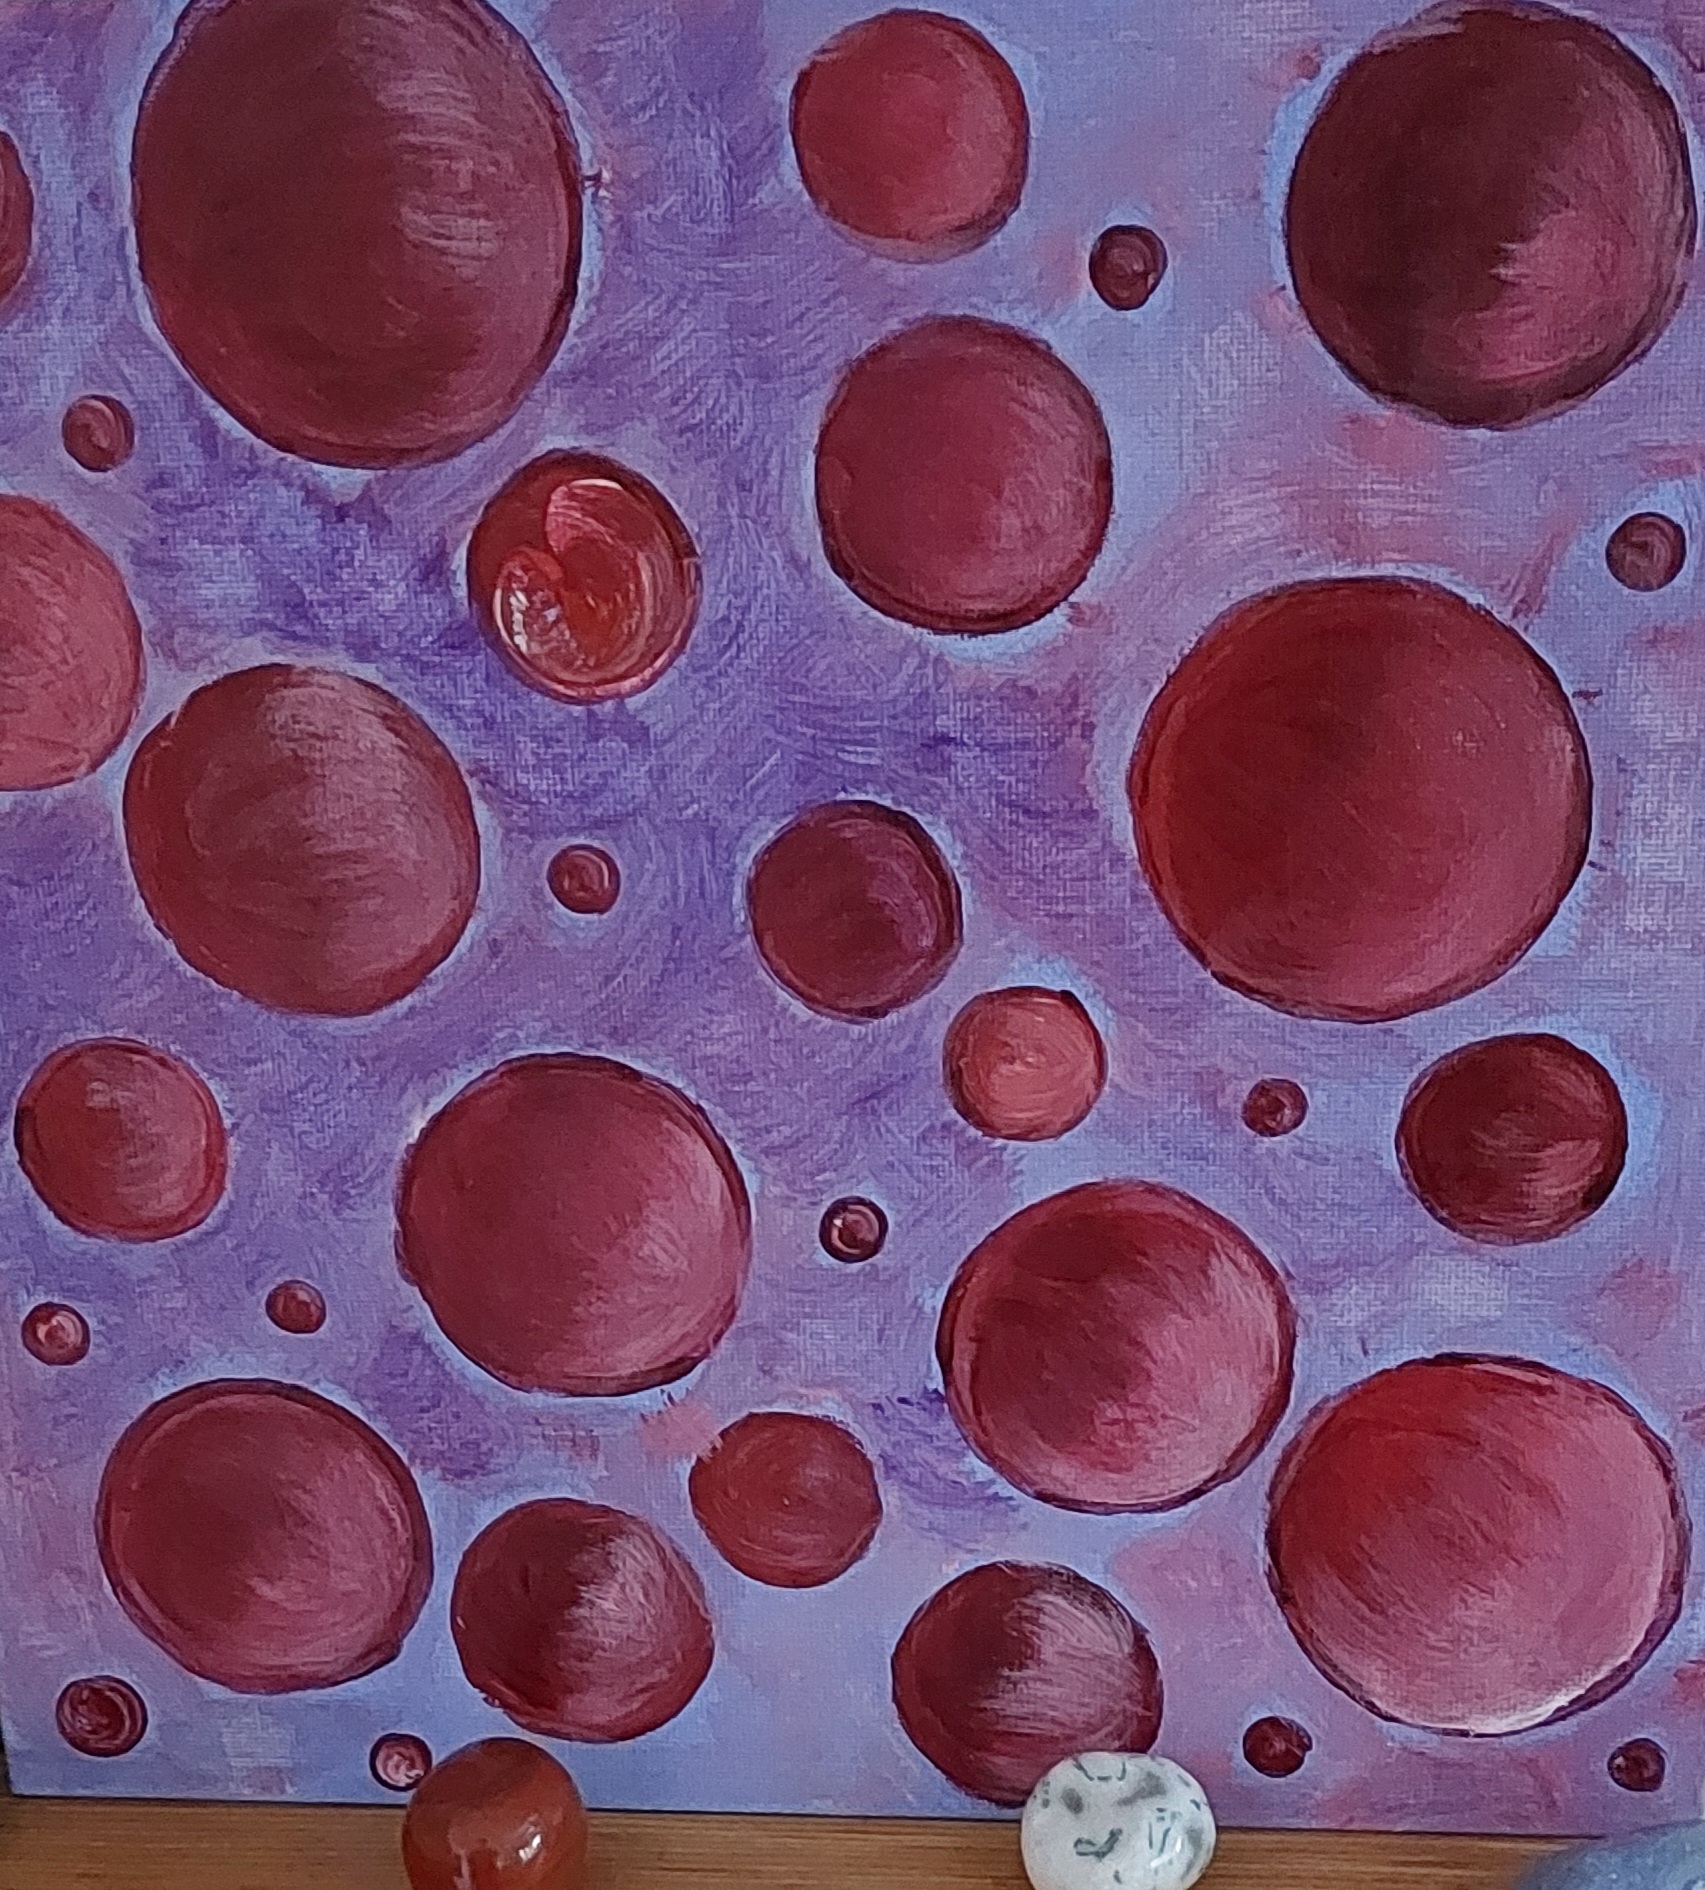 Bild mit roten Kreisen verschiedener Größe auf lilafarbendem Hintergrund